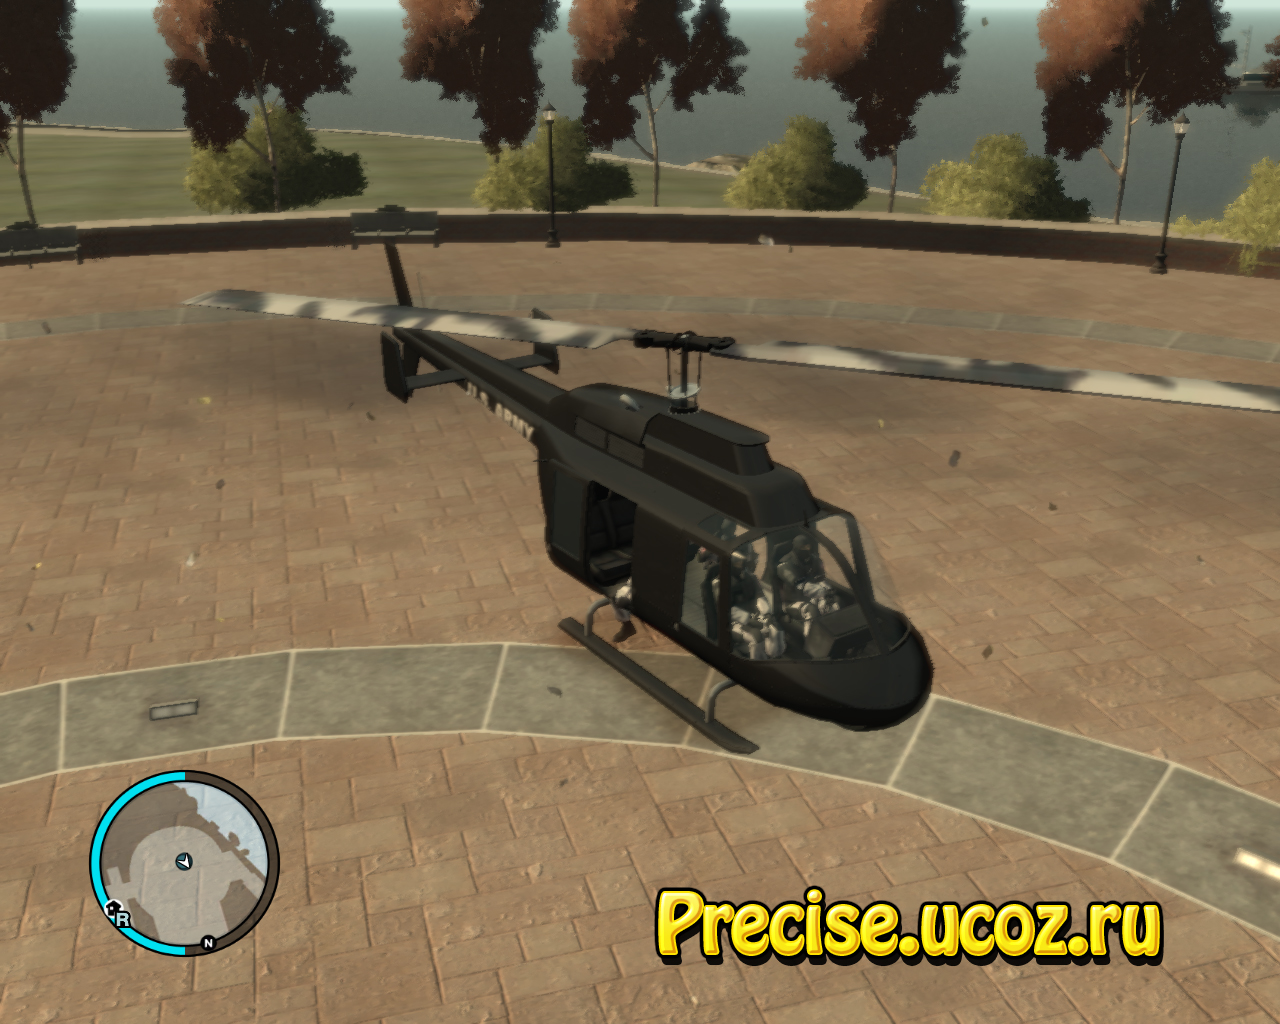 Black_U.S.ARMY_Helicopter_v0.2